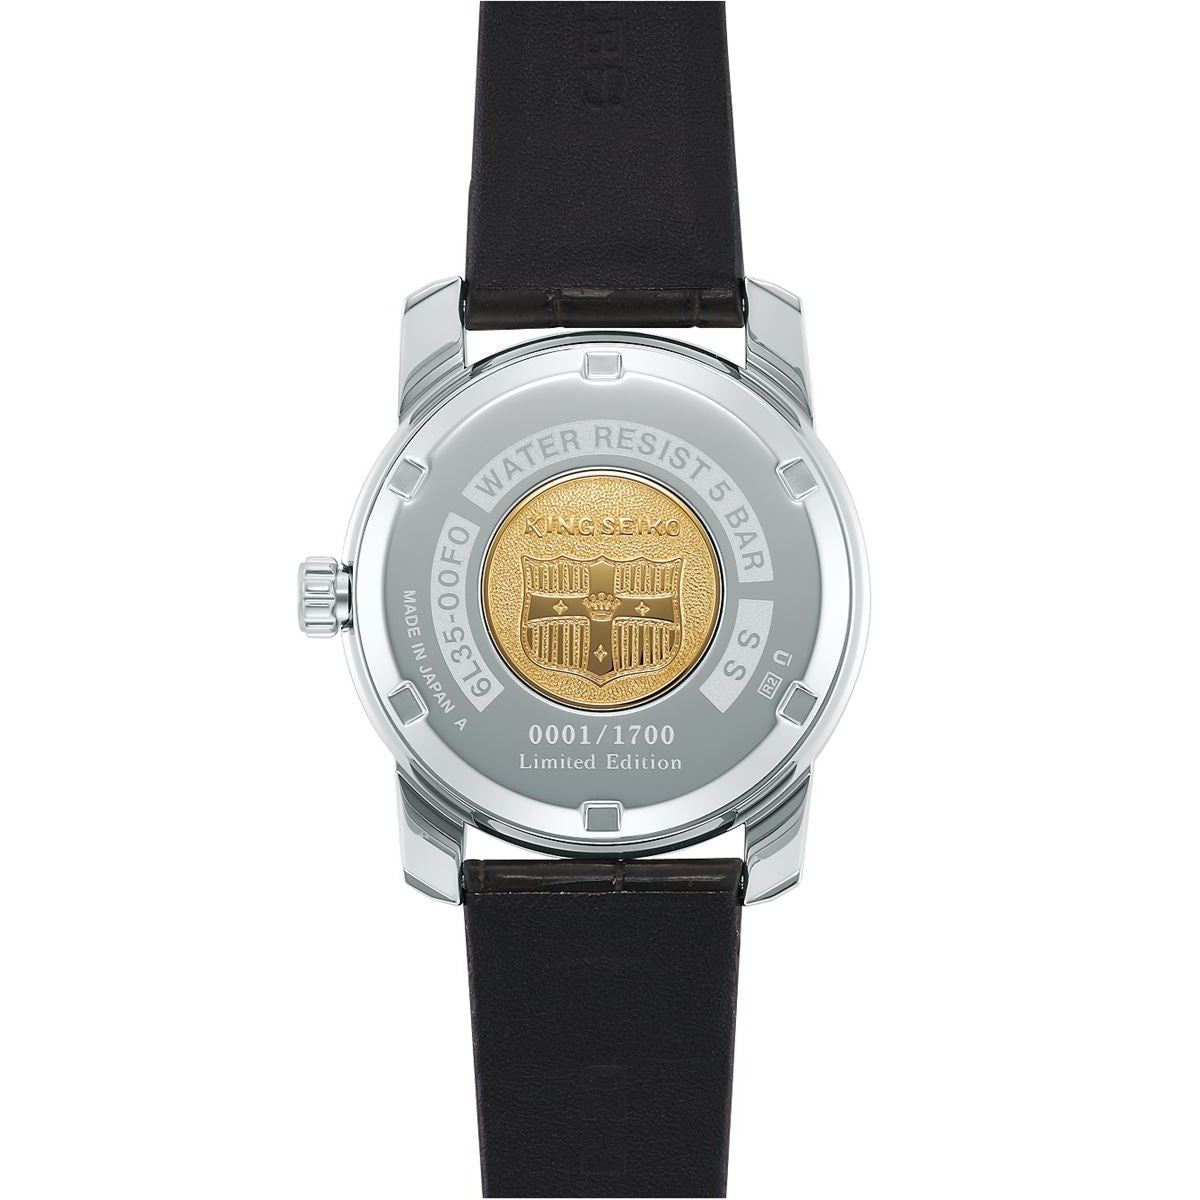 セイコー キングセイコー SEIKO KING SEIKO 自動巻き メカニカル 腕時計 メンズ KSK 復刻デザイン限定モデル SDKA003